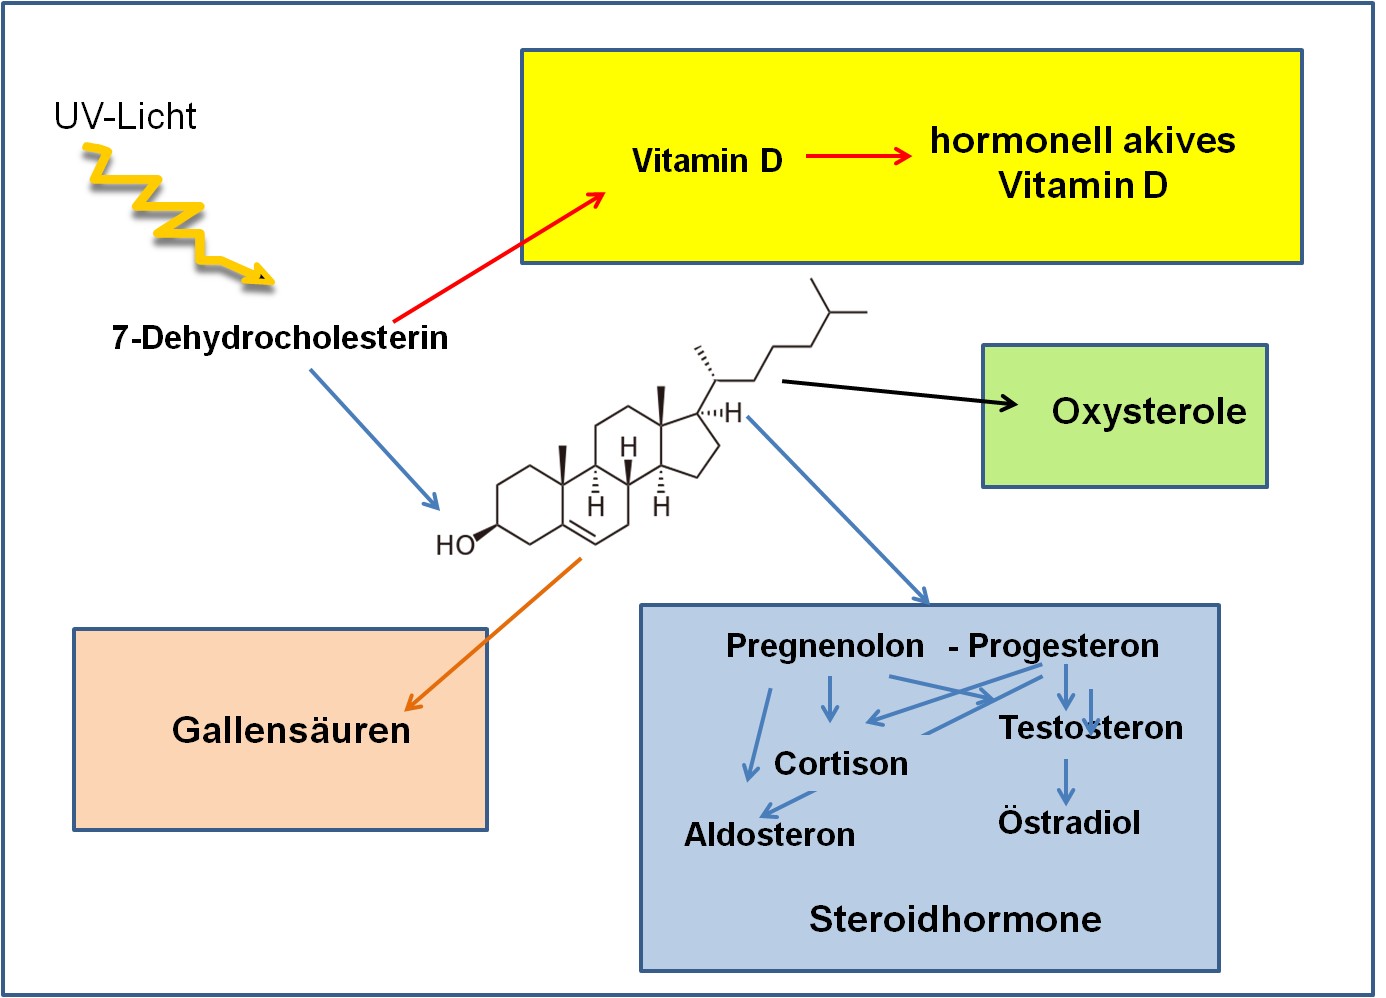 Cholesterins als Vorläufer bioaktiver Produkte